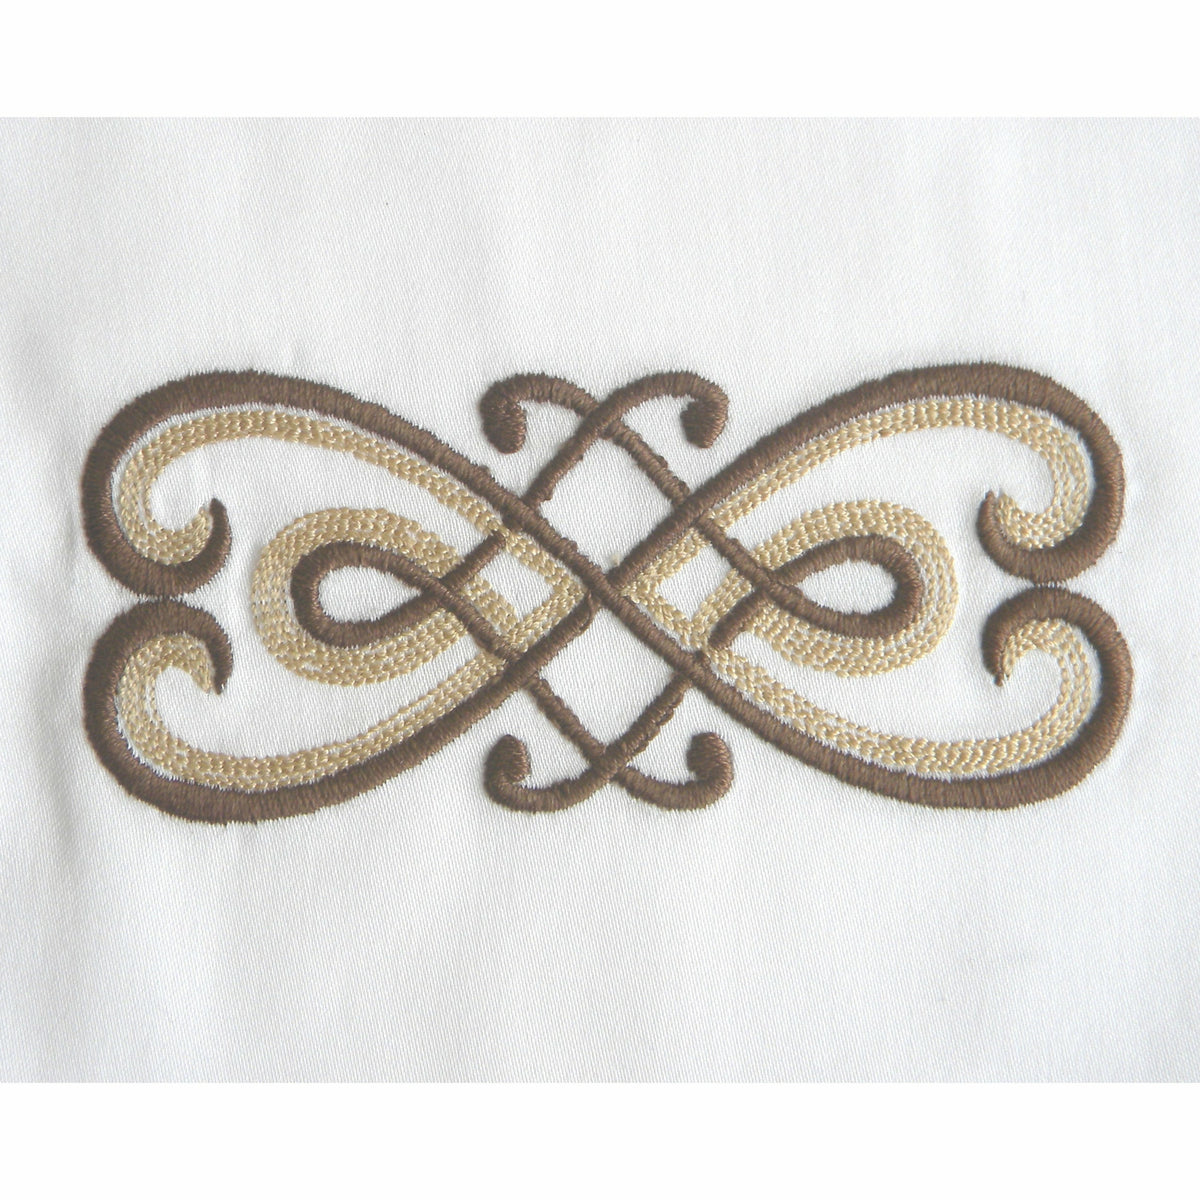 Dea Gianna Embroidered Bedding Swatch White/Dark Chocolate Fine Linens